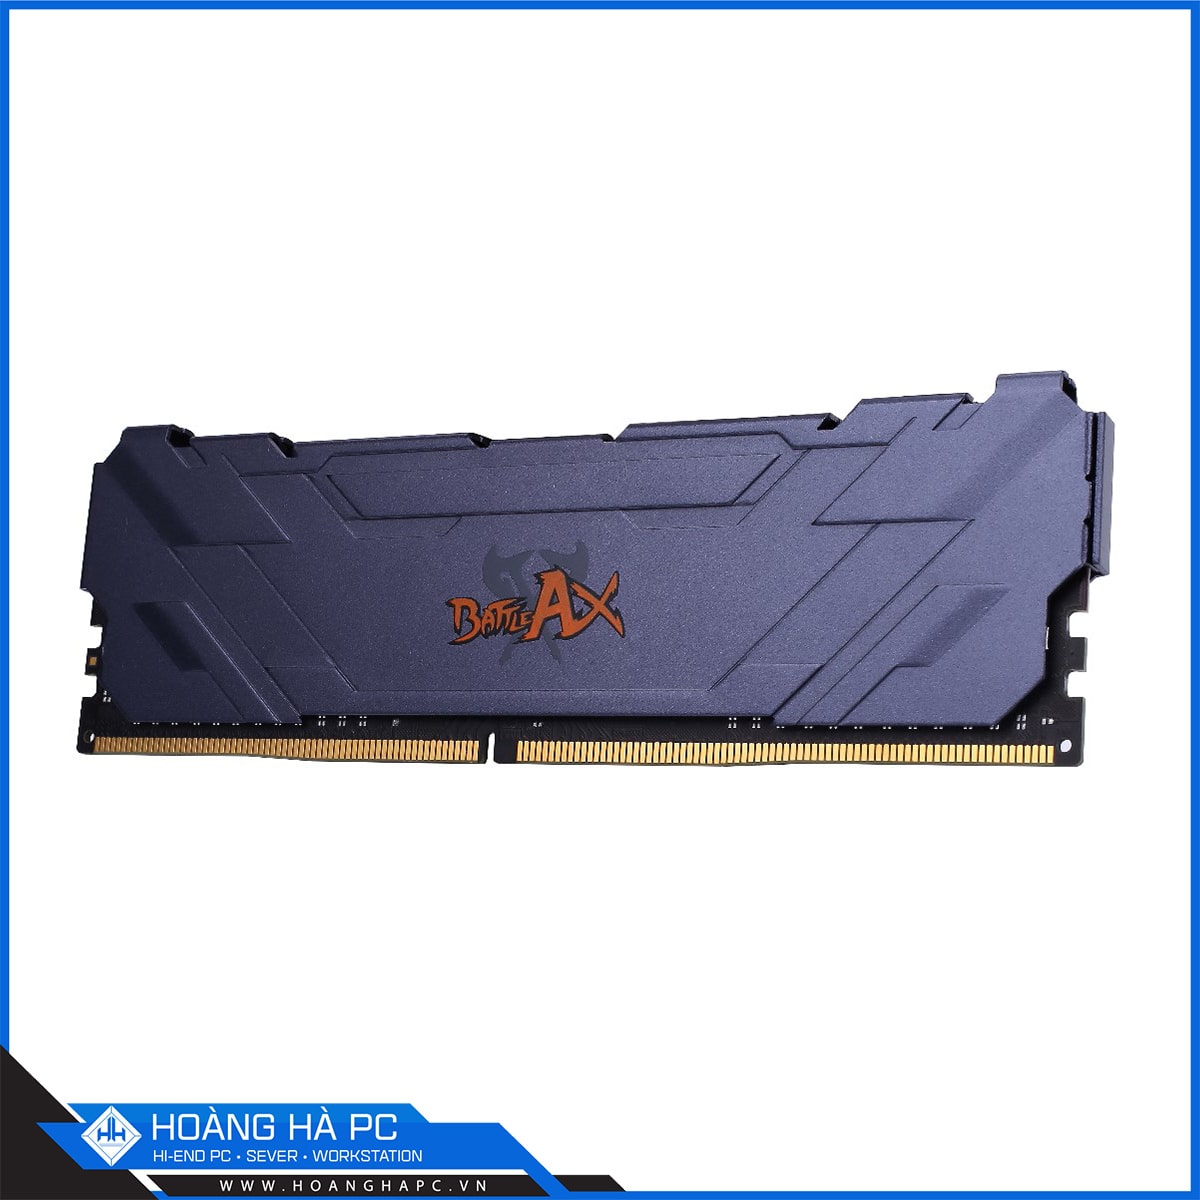 COLORFUL BATTLE AX 32GB BUS 3000 DDR4